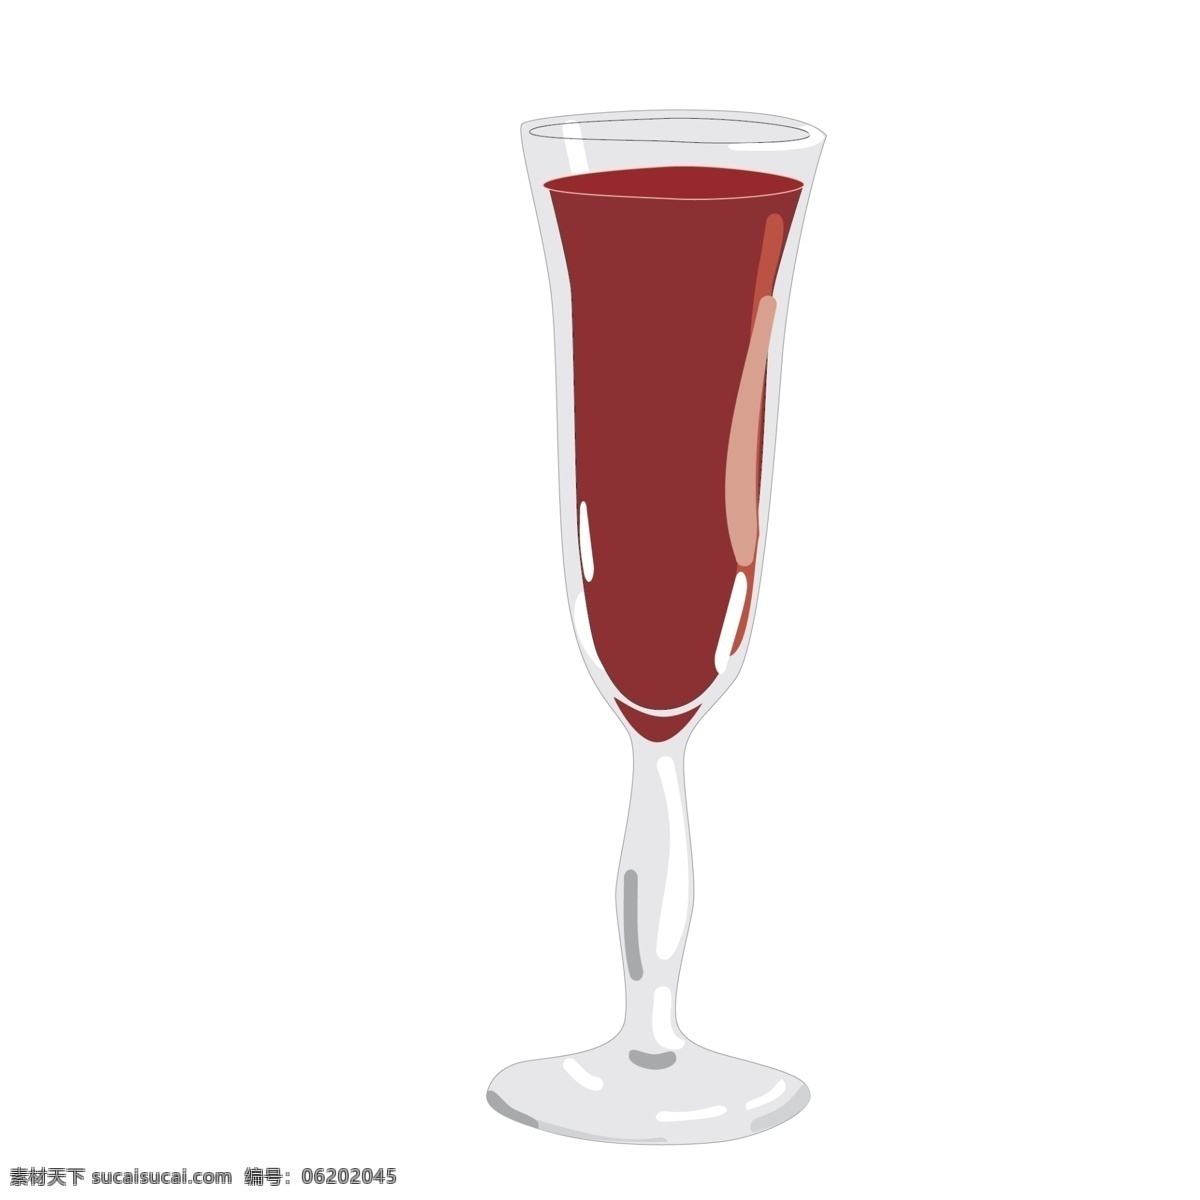 一杯 葡萄酒 免 抠 图 红色葡萄酒 卡通酒水 酒水饮料 卡通红色饮料 酒水 被子 红酒杯